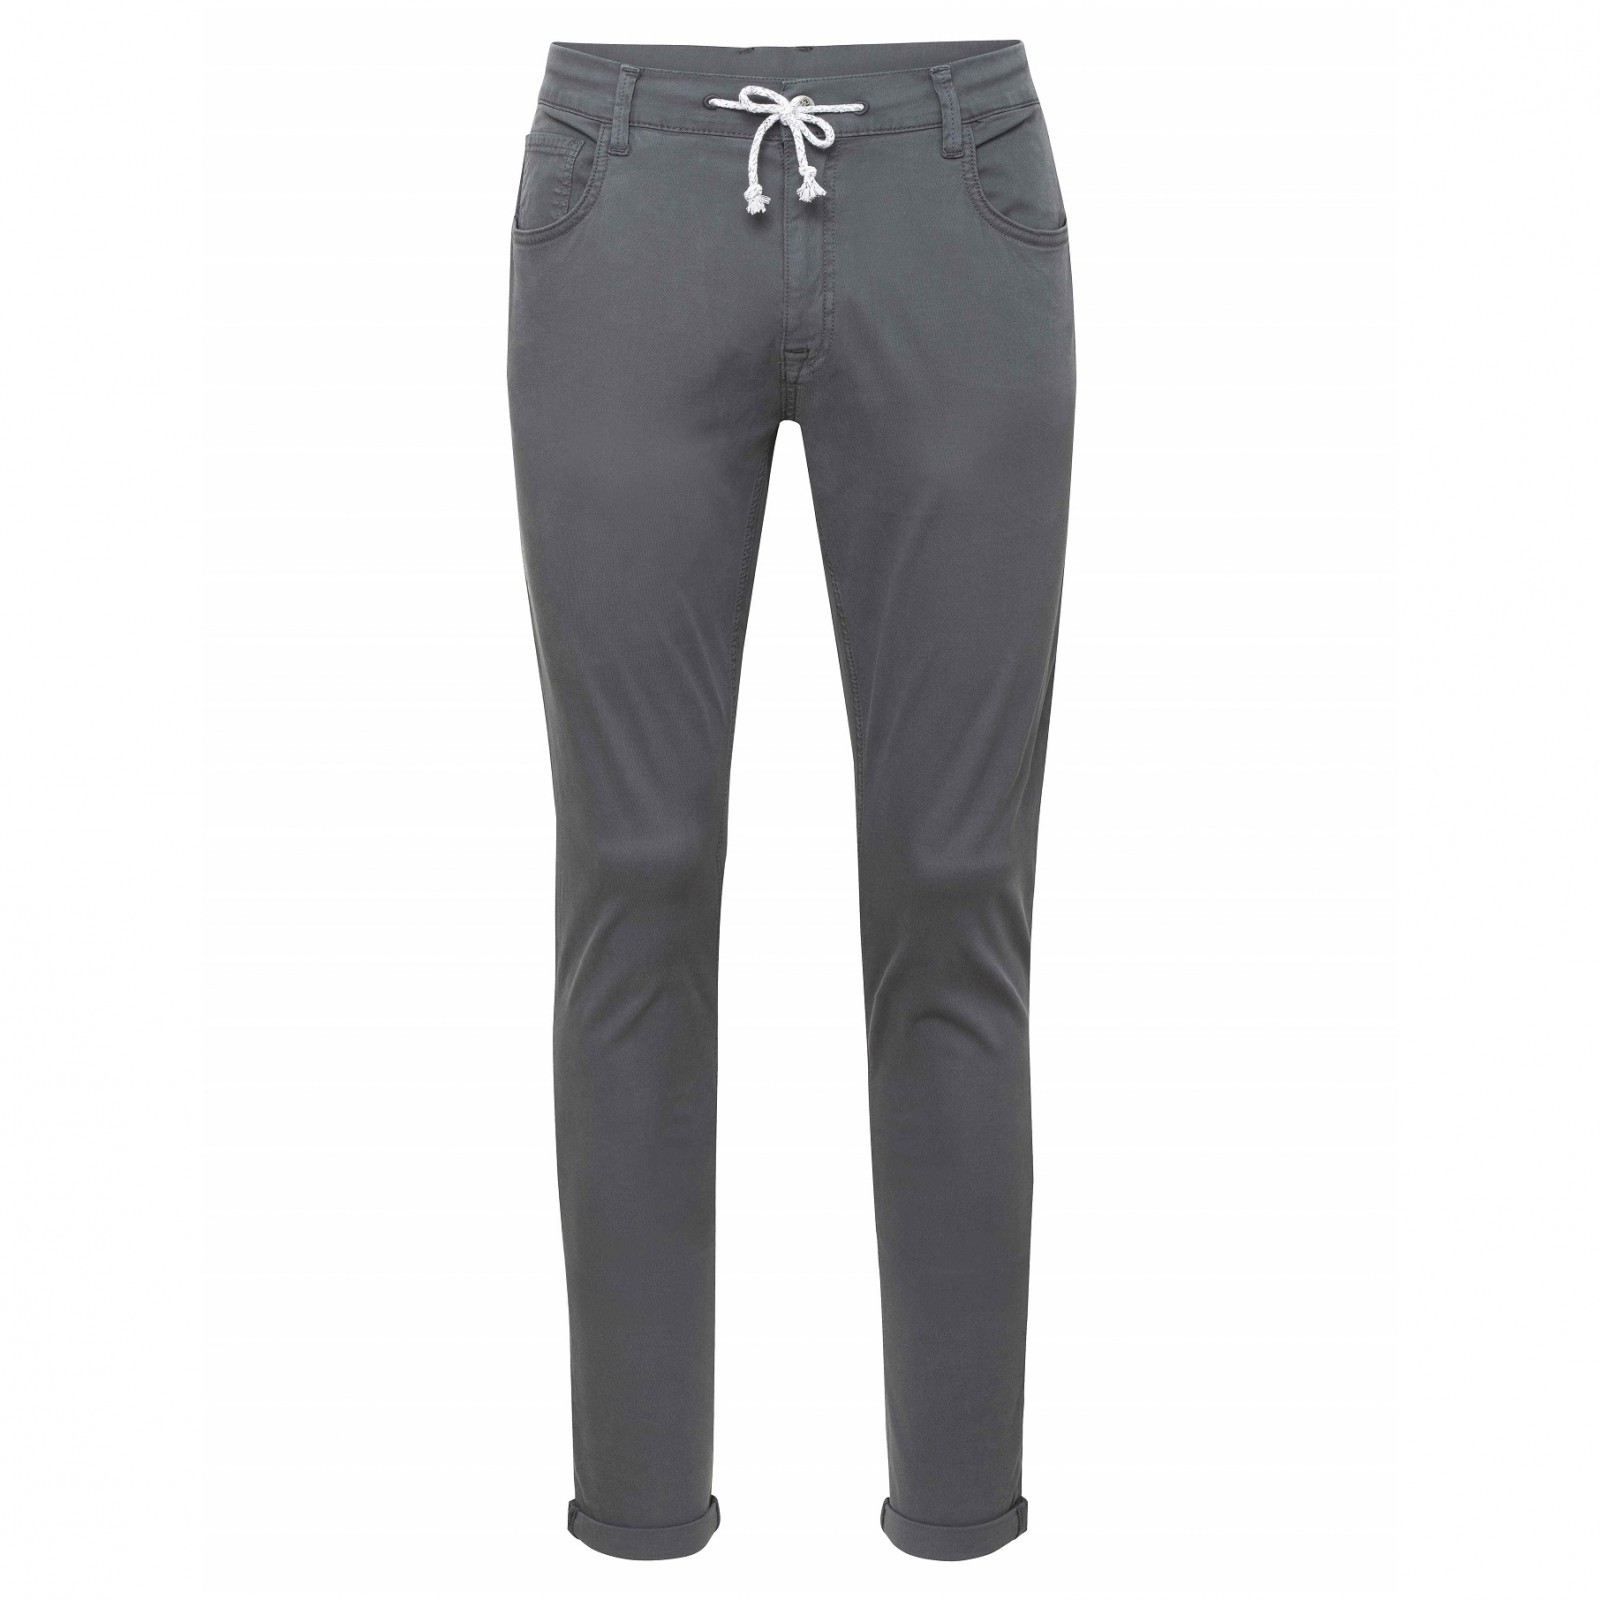 Pánské kalhoty Chillaz San Diego Velikost: L / Barva: šedá